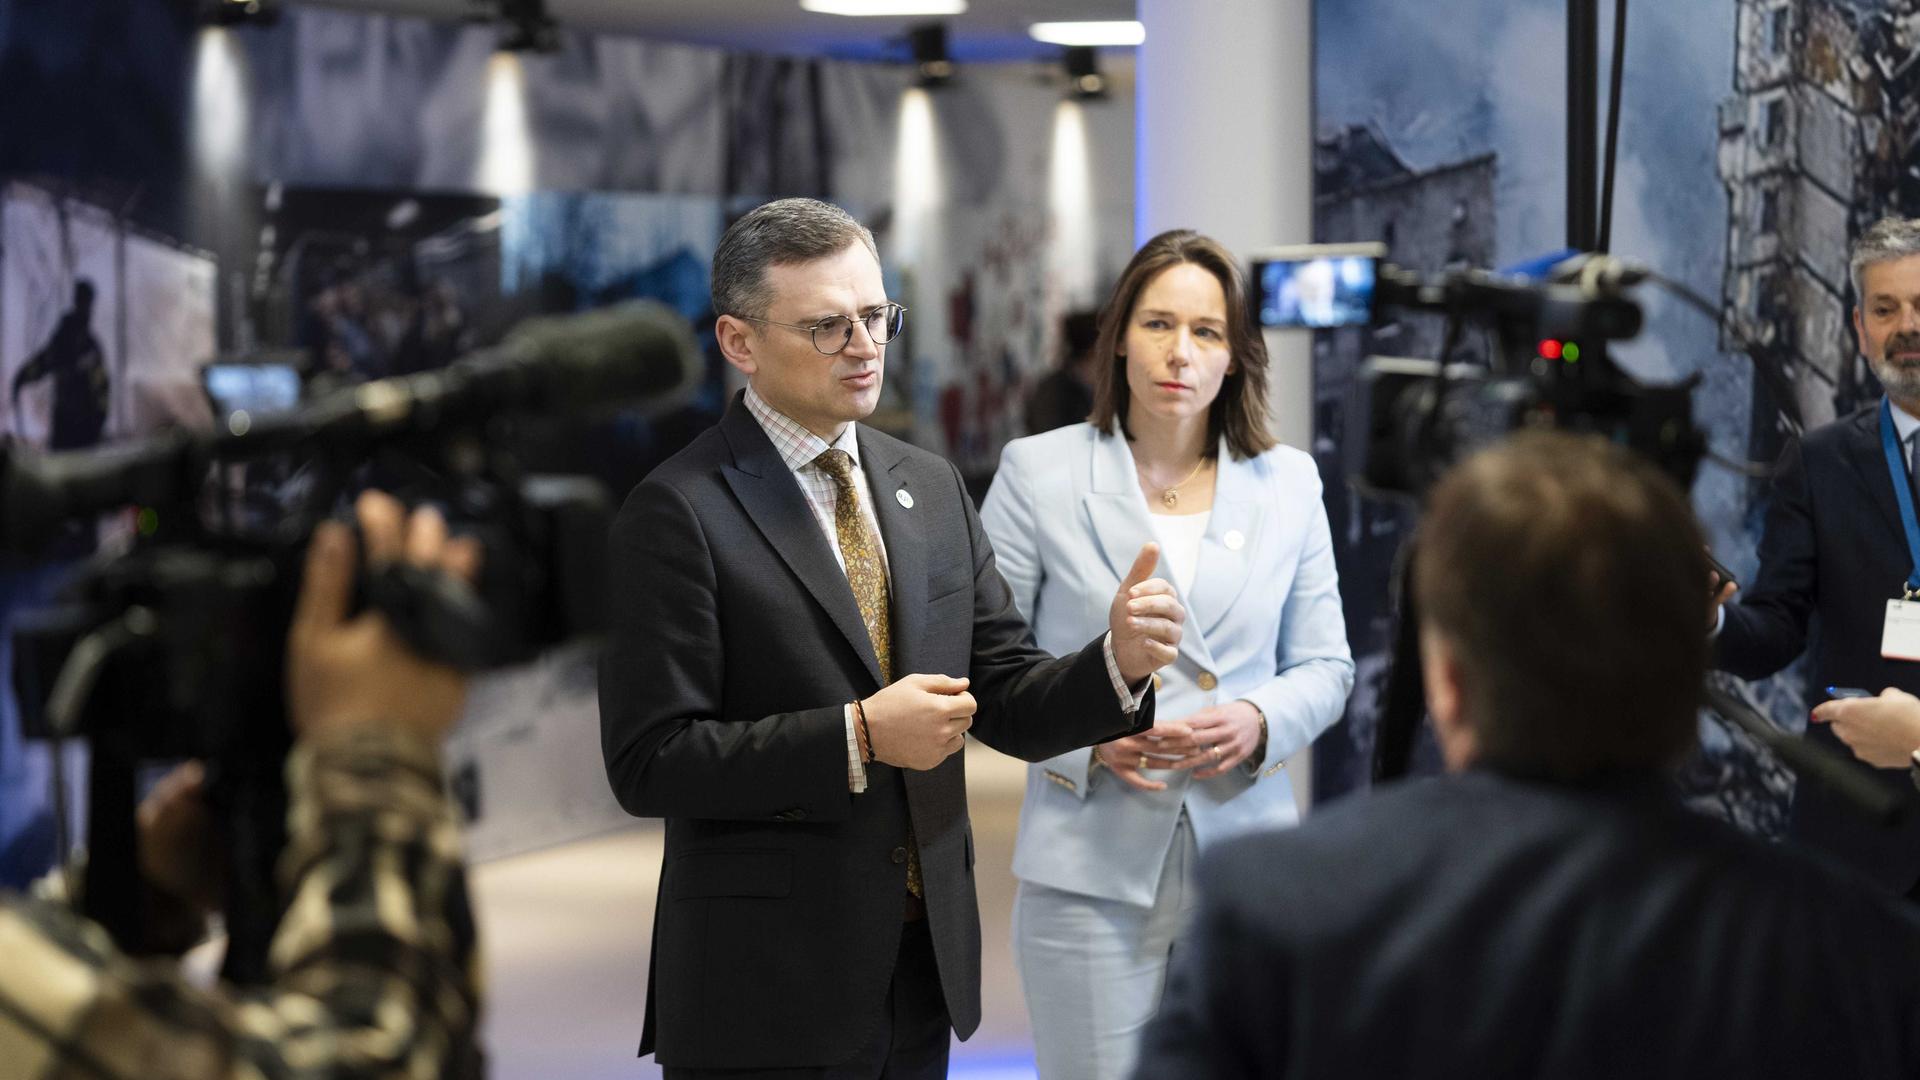 Die niederländische Außenministerin Hanke Bruins Slot und ihr ukrainischer Kollege Dmytro Koelebastehen in Den Haag Journalisten gegenüber.